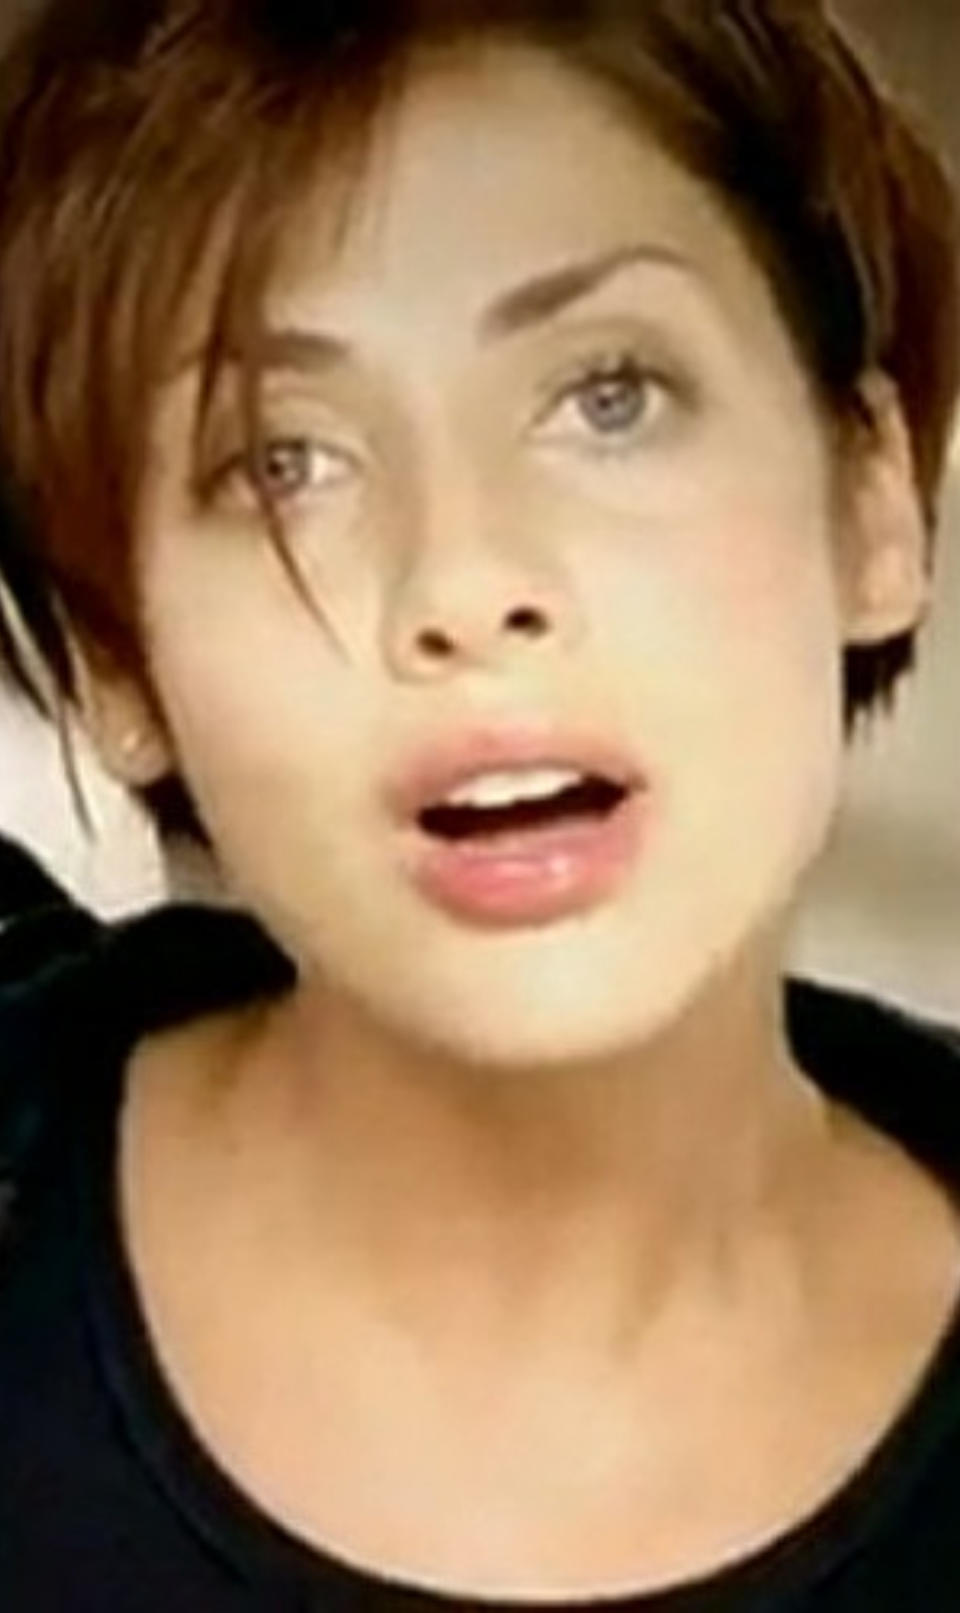 Imbruglia in her "Torn" music video